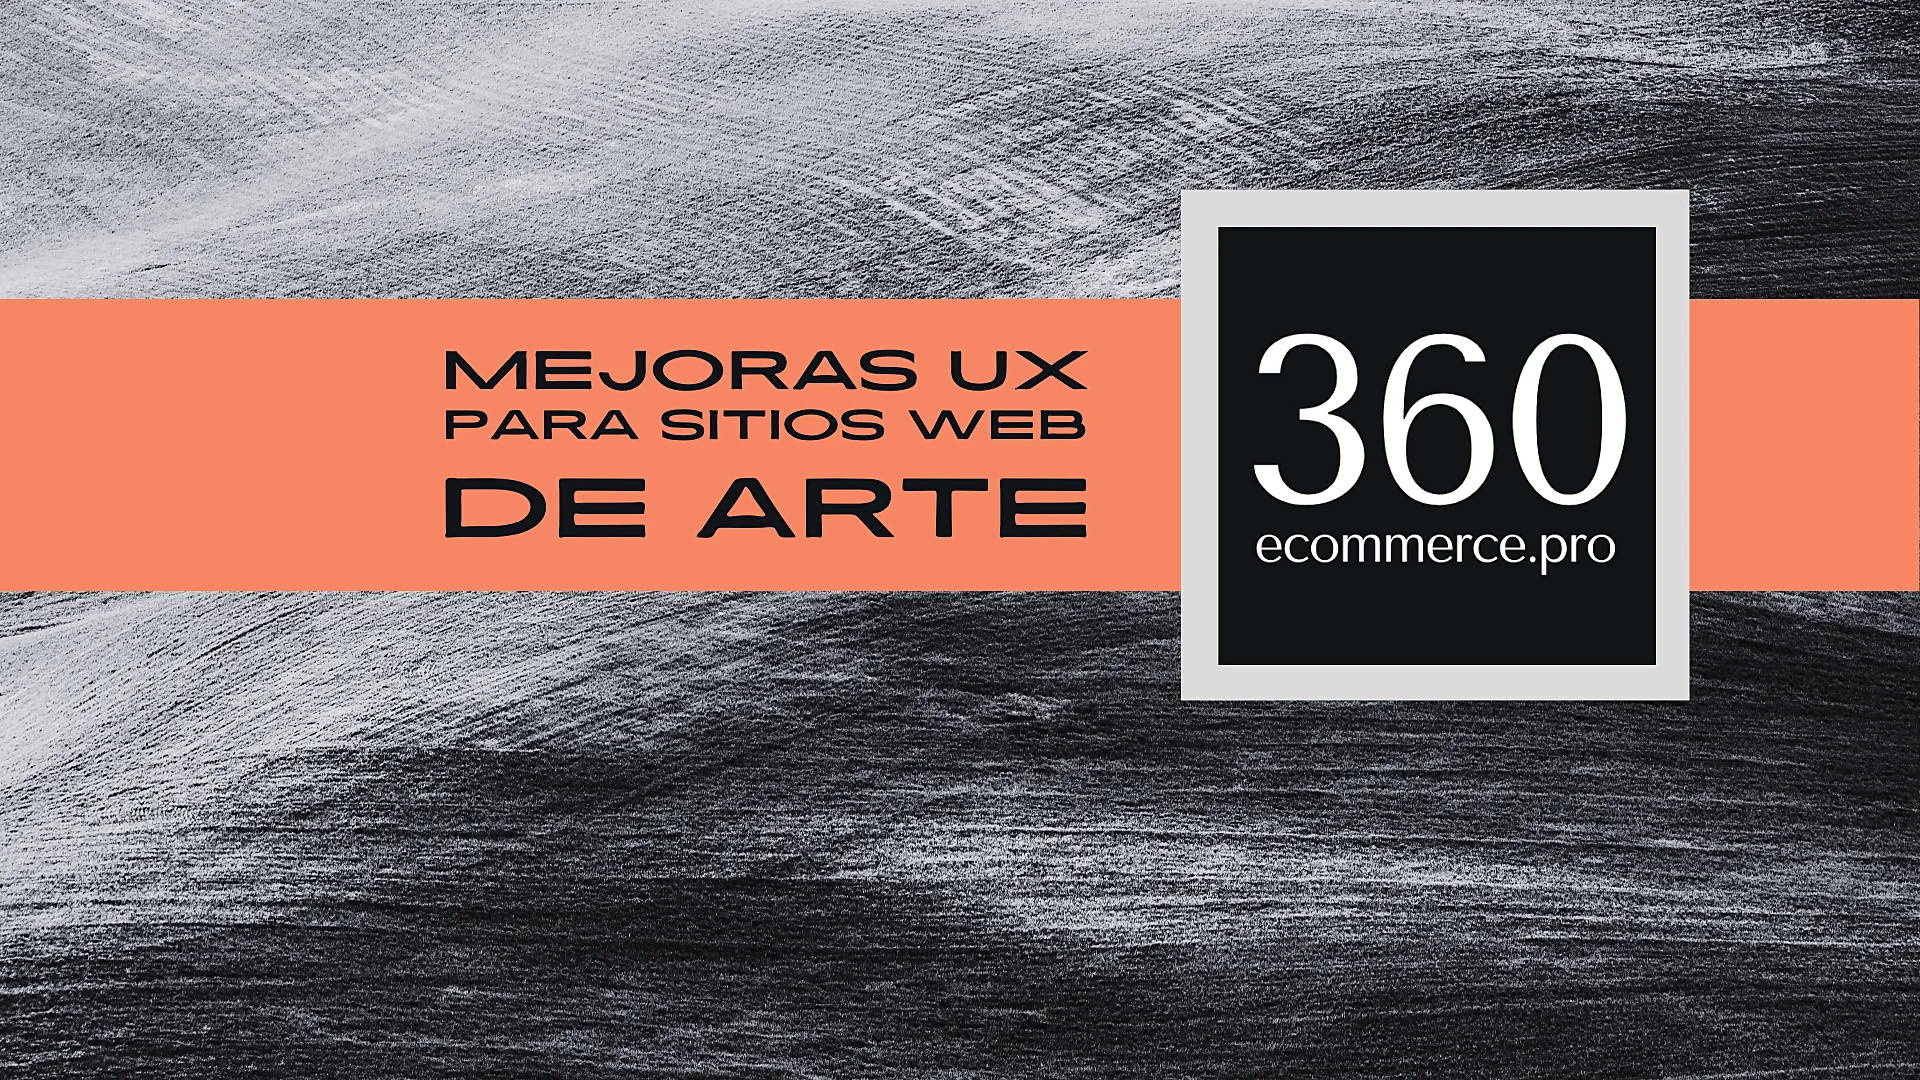 Imagen promocional con un fondo texturizado en blanco y negro y una franja naranja que contiene el texto 'MEJORAS UX PARA SITIOS WEB DE ARTE' junto al logotipo '360 ecommerce.pro', enfatizando la importancia del SEO para galerías de Arte.